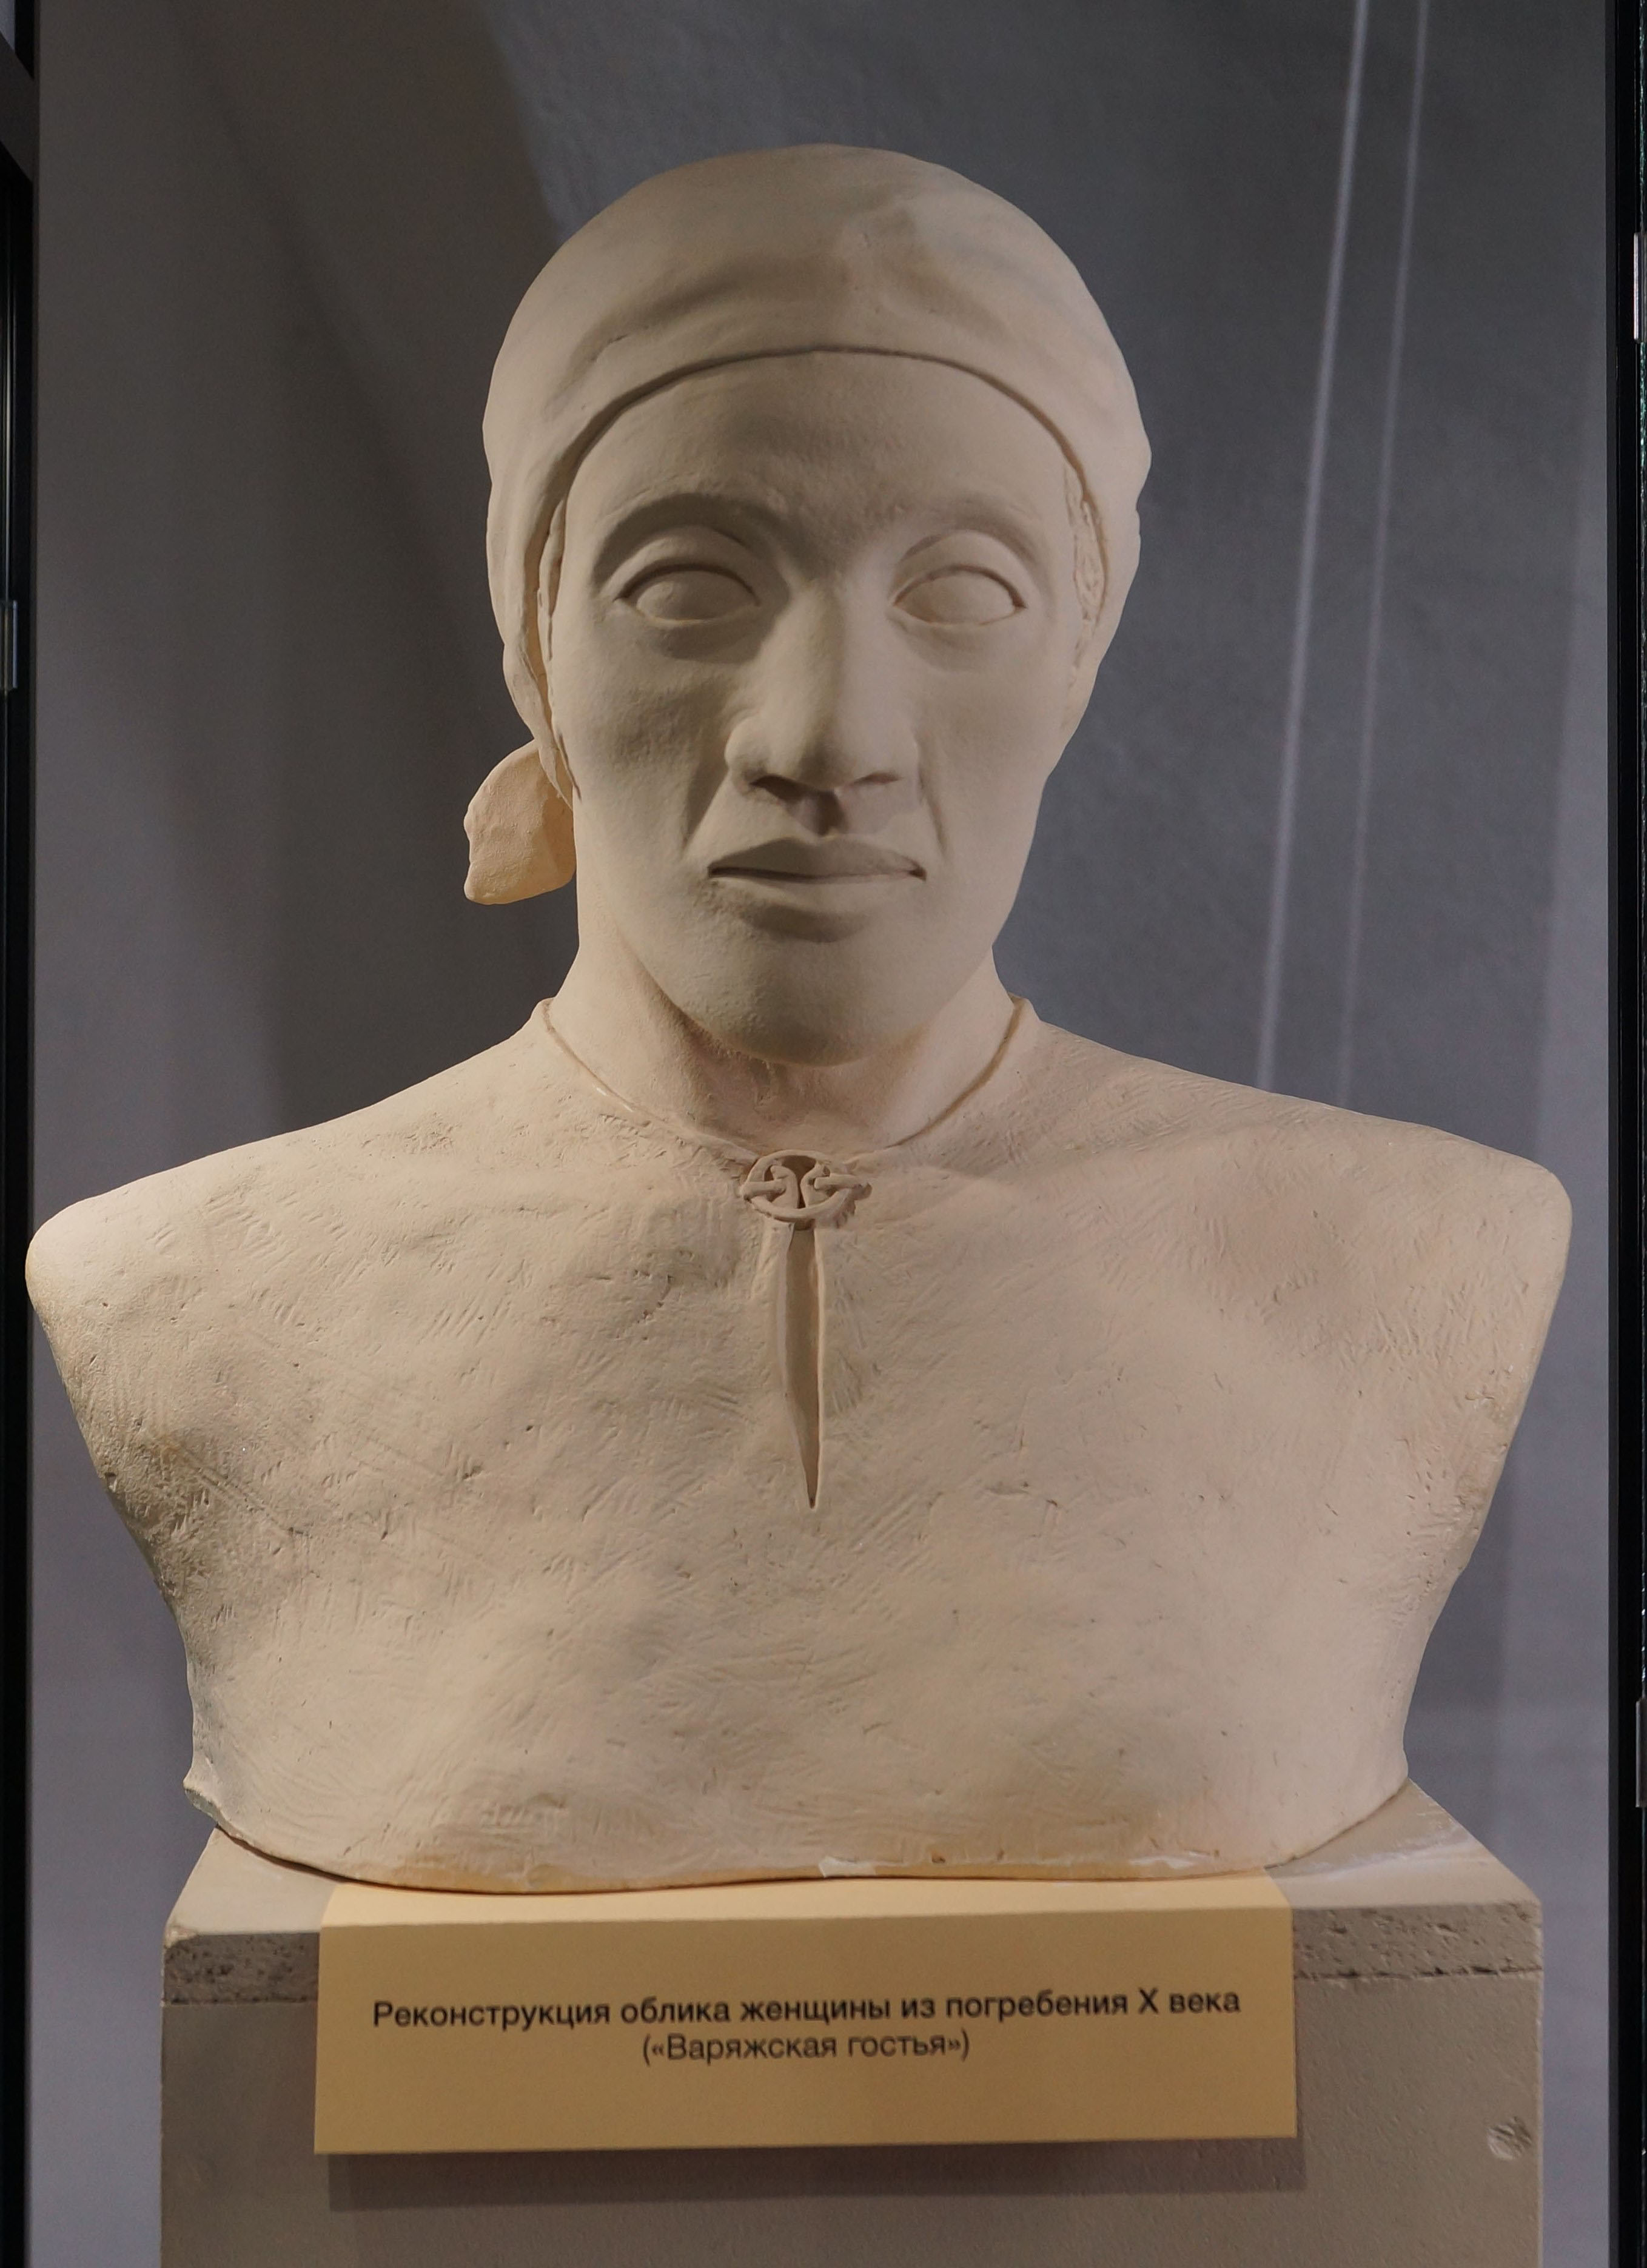 Реконструкция облика женщины из погребения Х века ("Варяжская гостья").